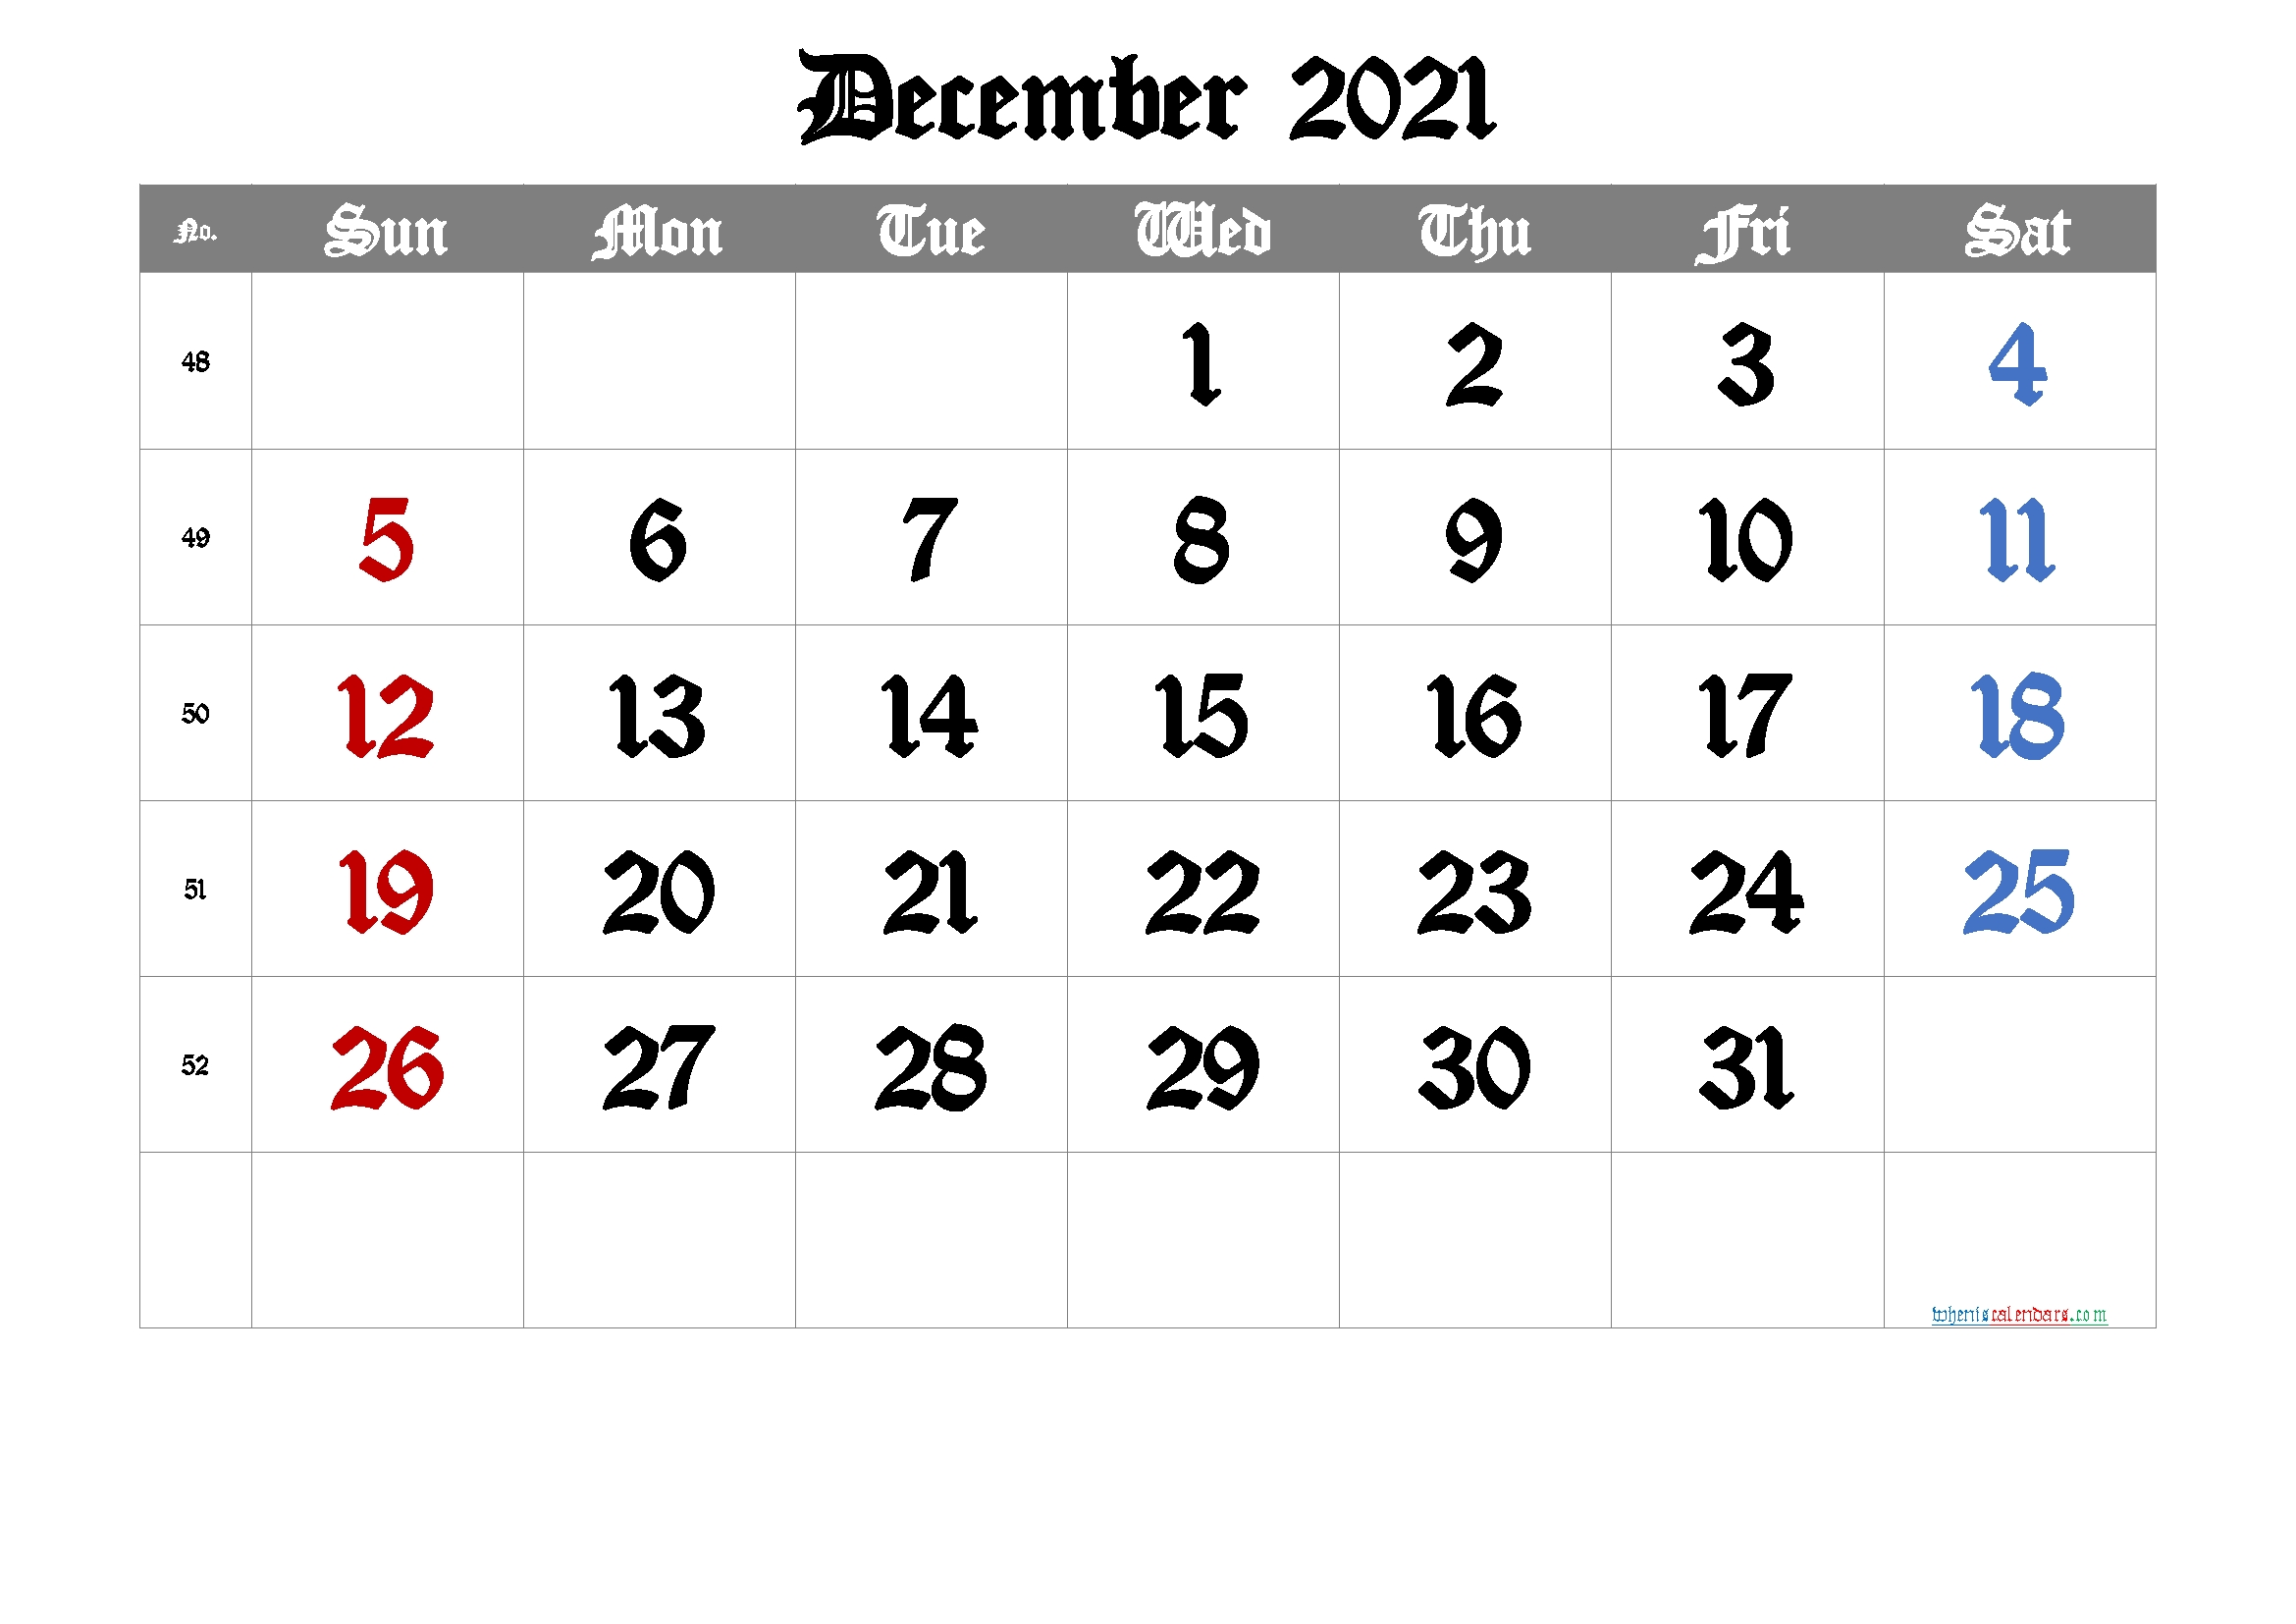 Get December 2021 Layout